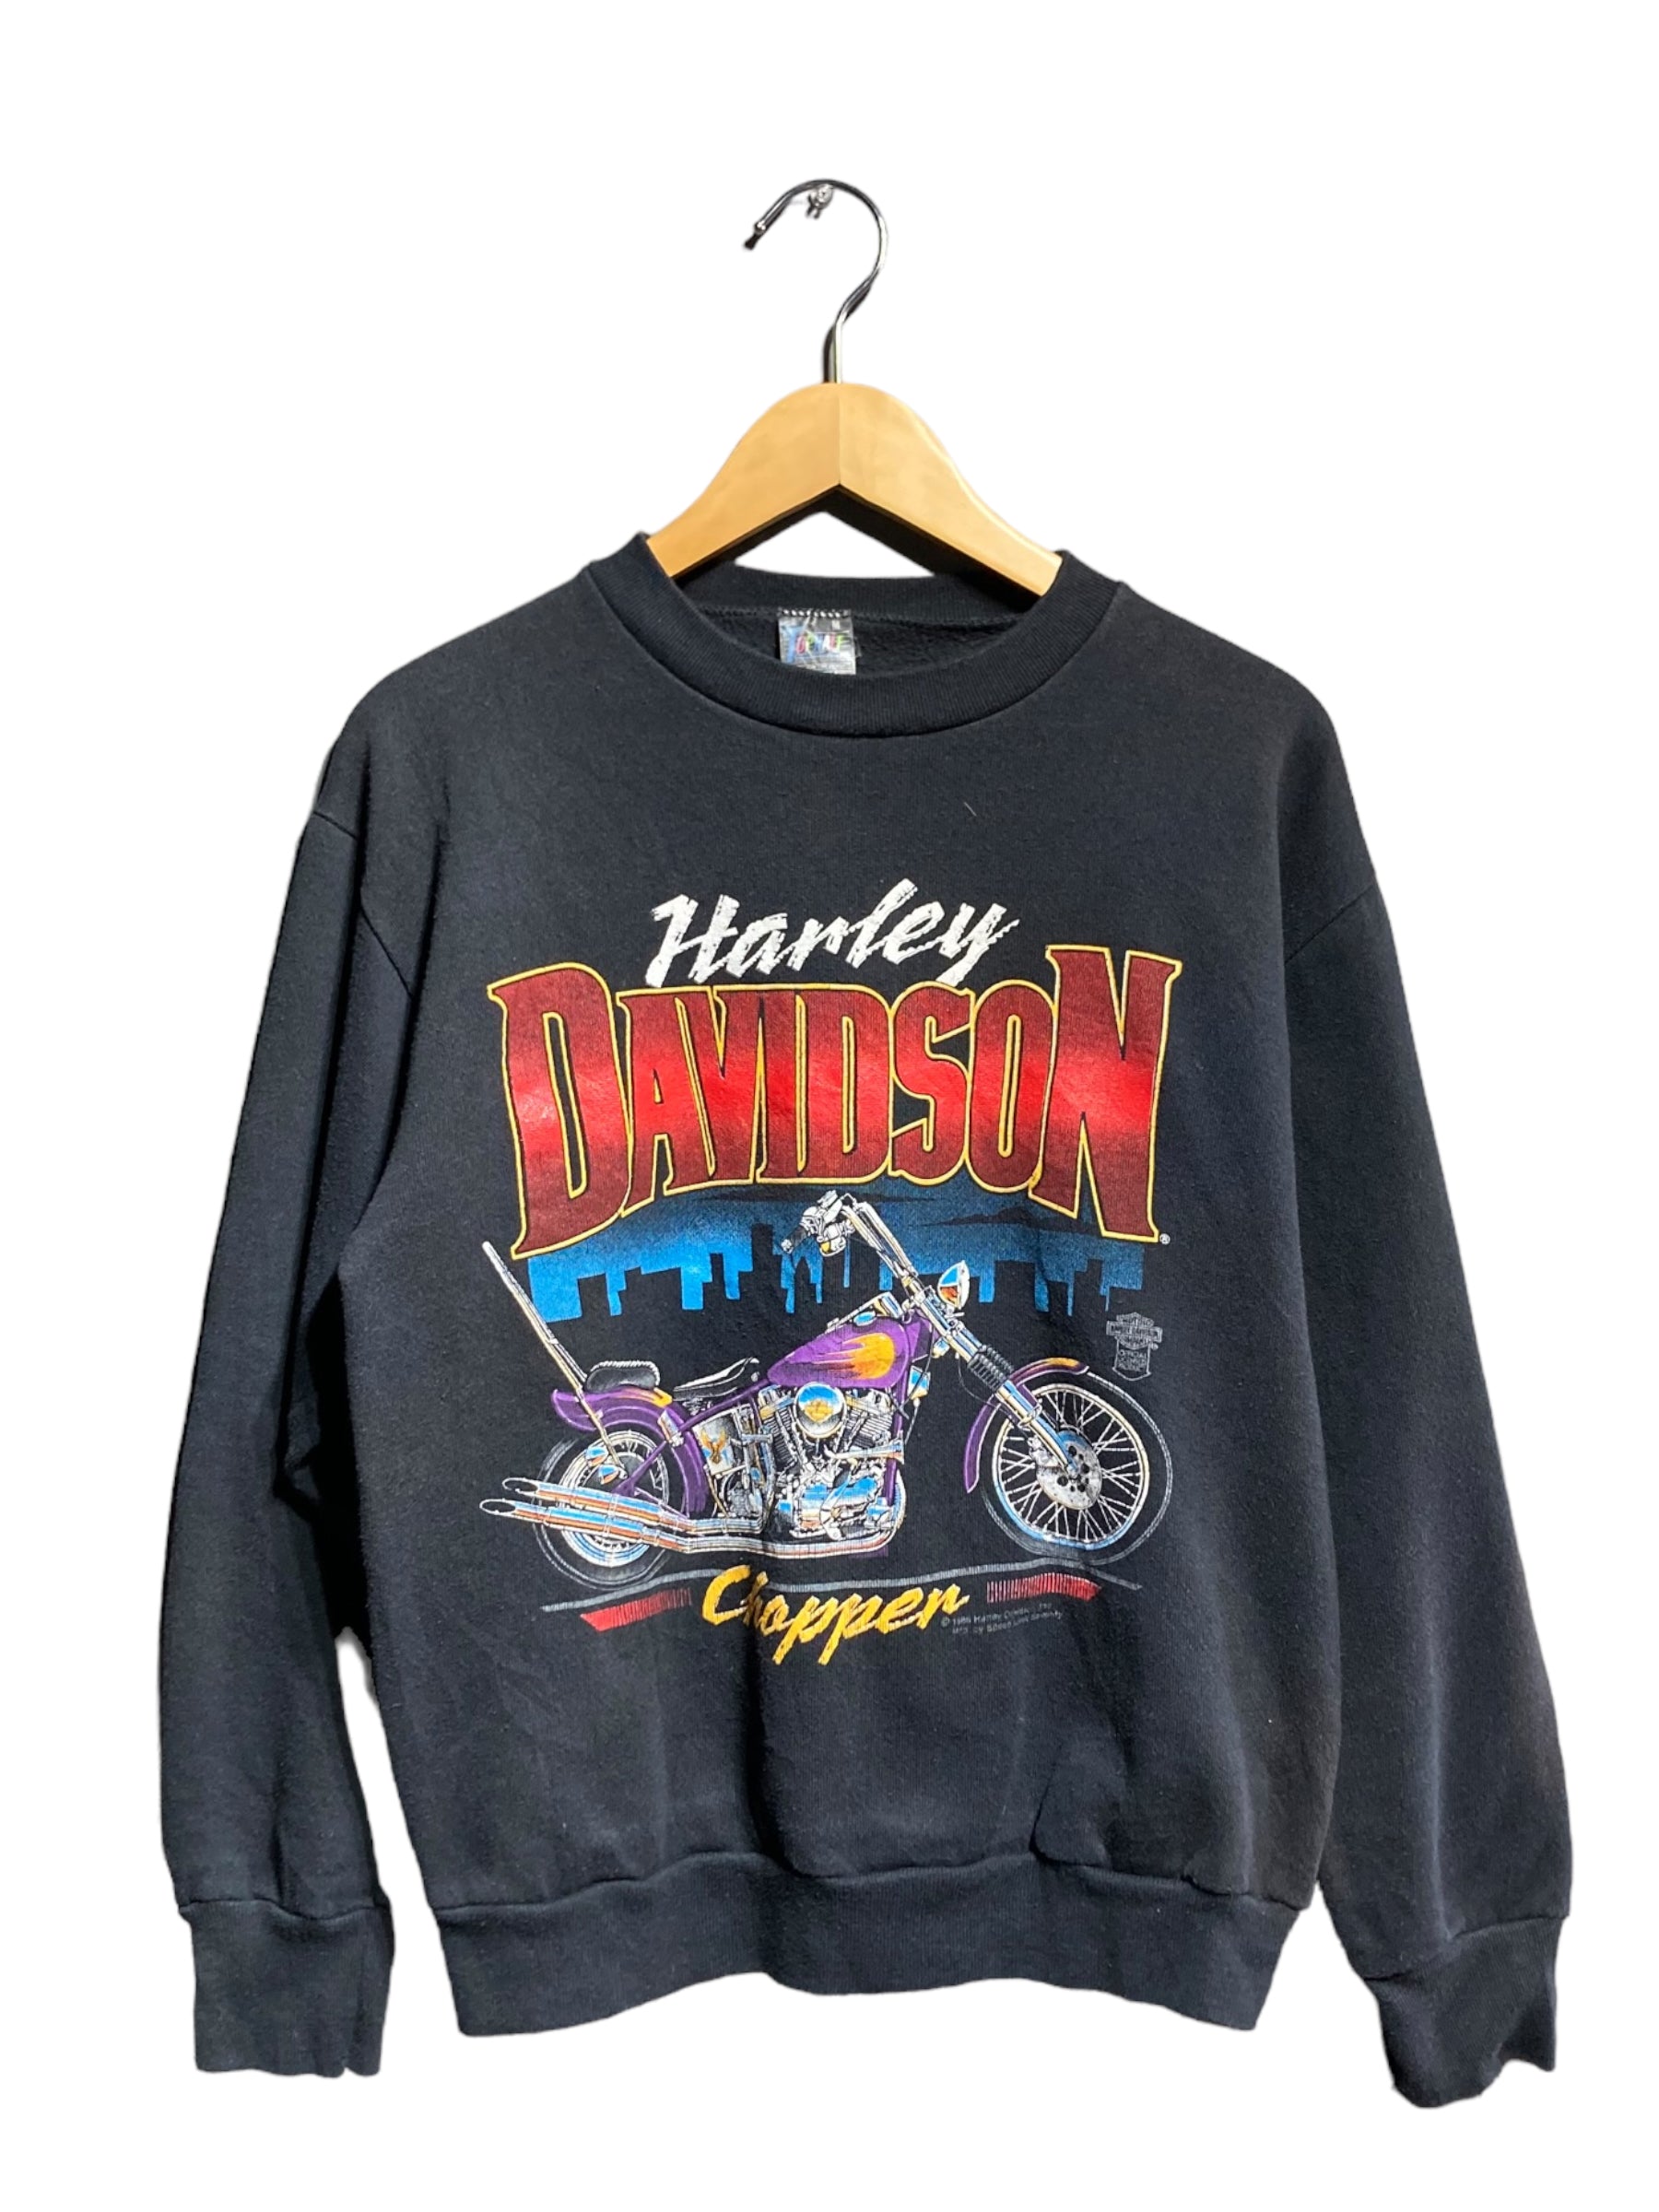 Harley Davidson ハーレーダビッドソン 80s スウェット トレーナー